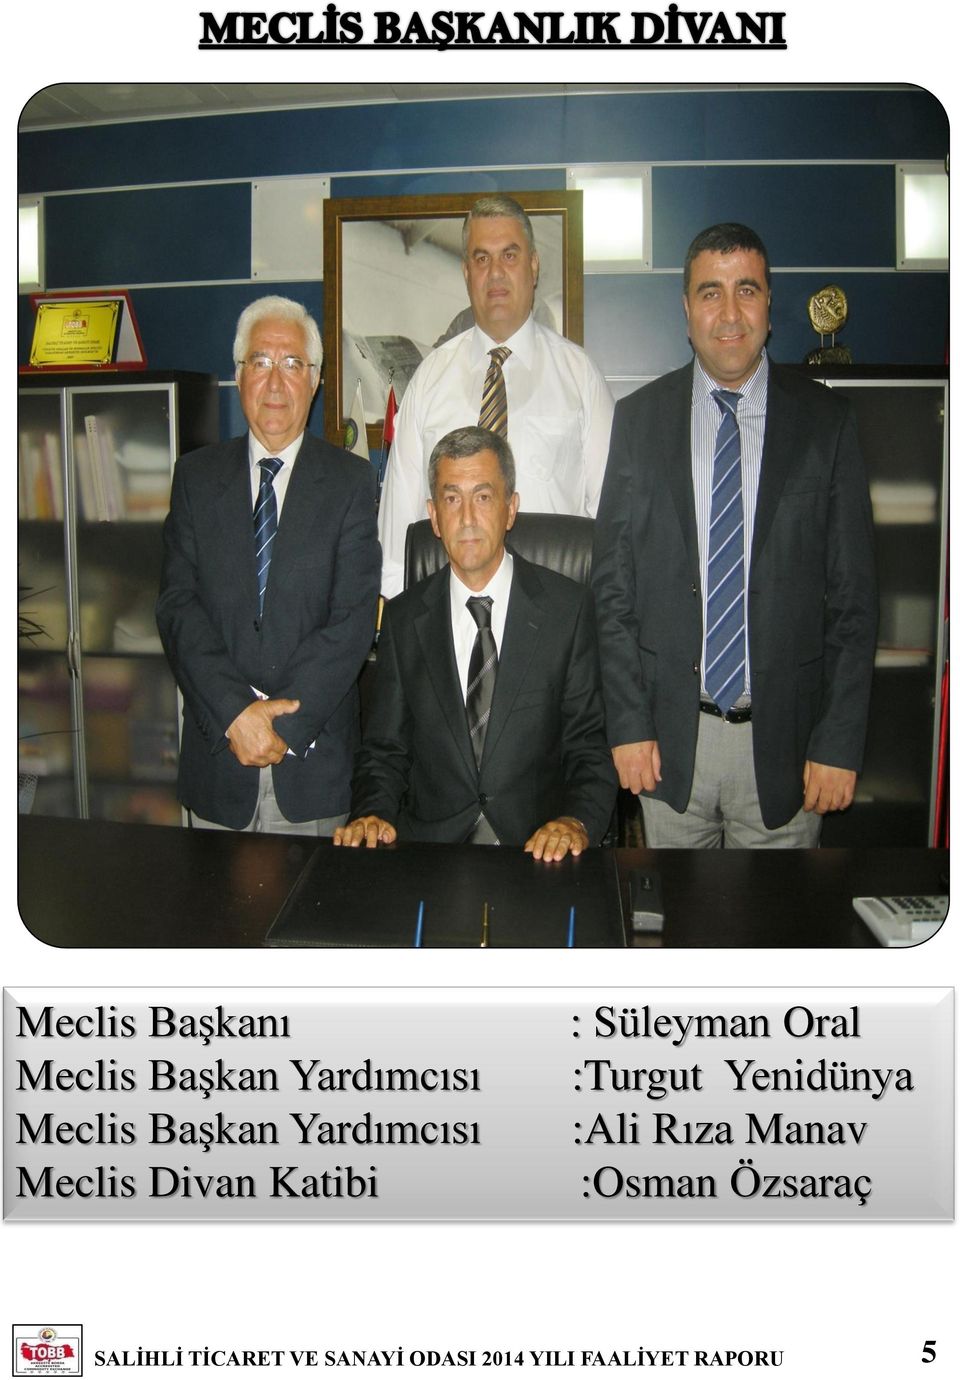 Meclis Divan Katibi : Süleyman Oral